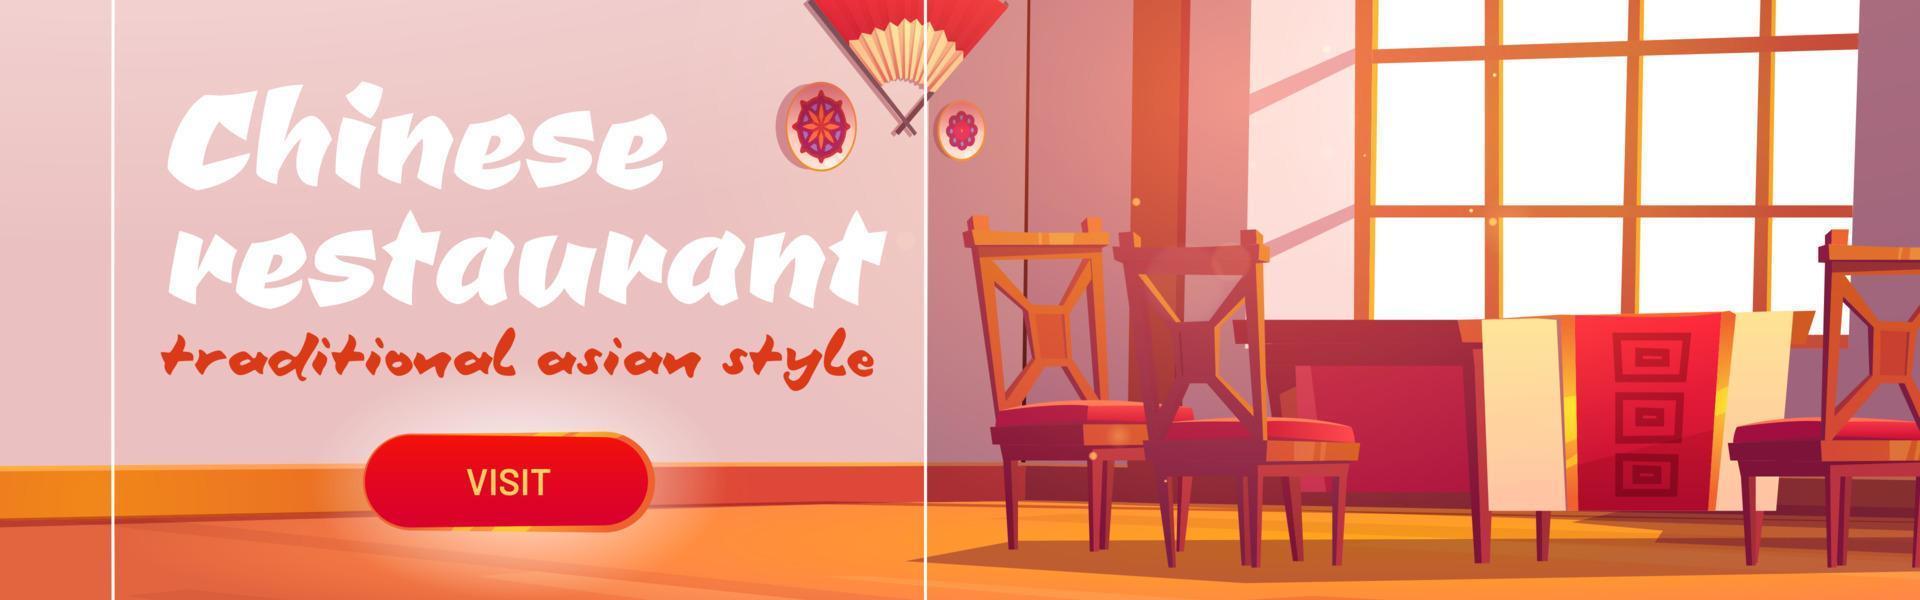 bannière web de dessin animé de restaurant chinois, invitation vecteur